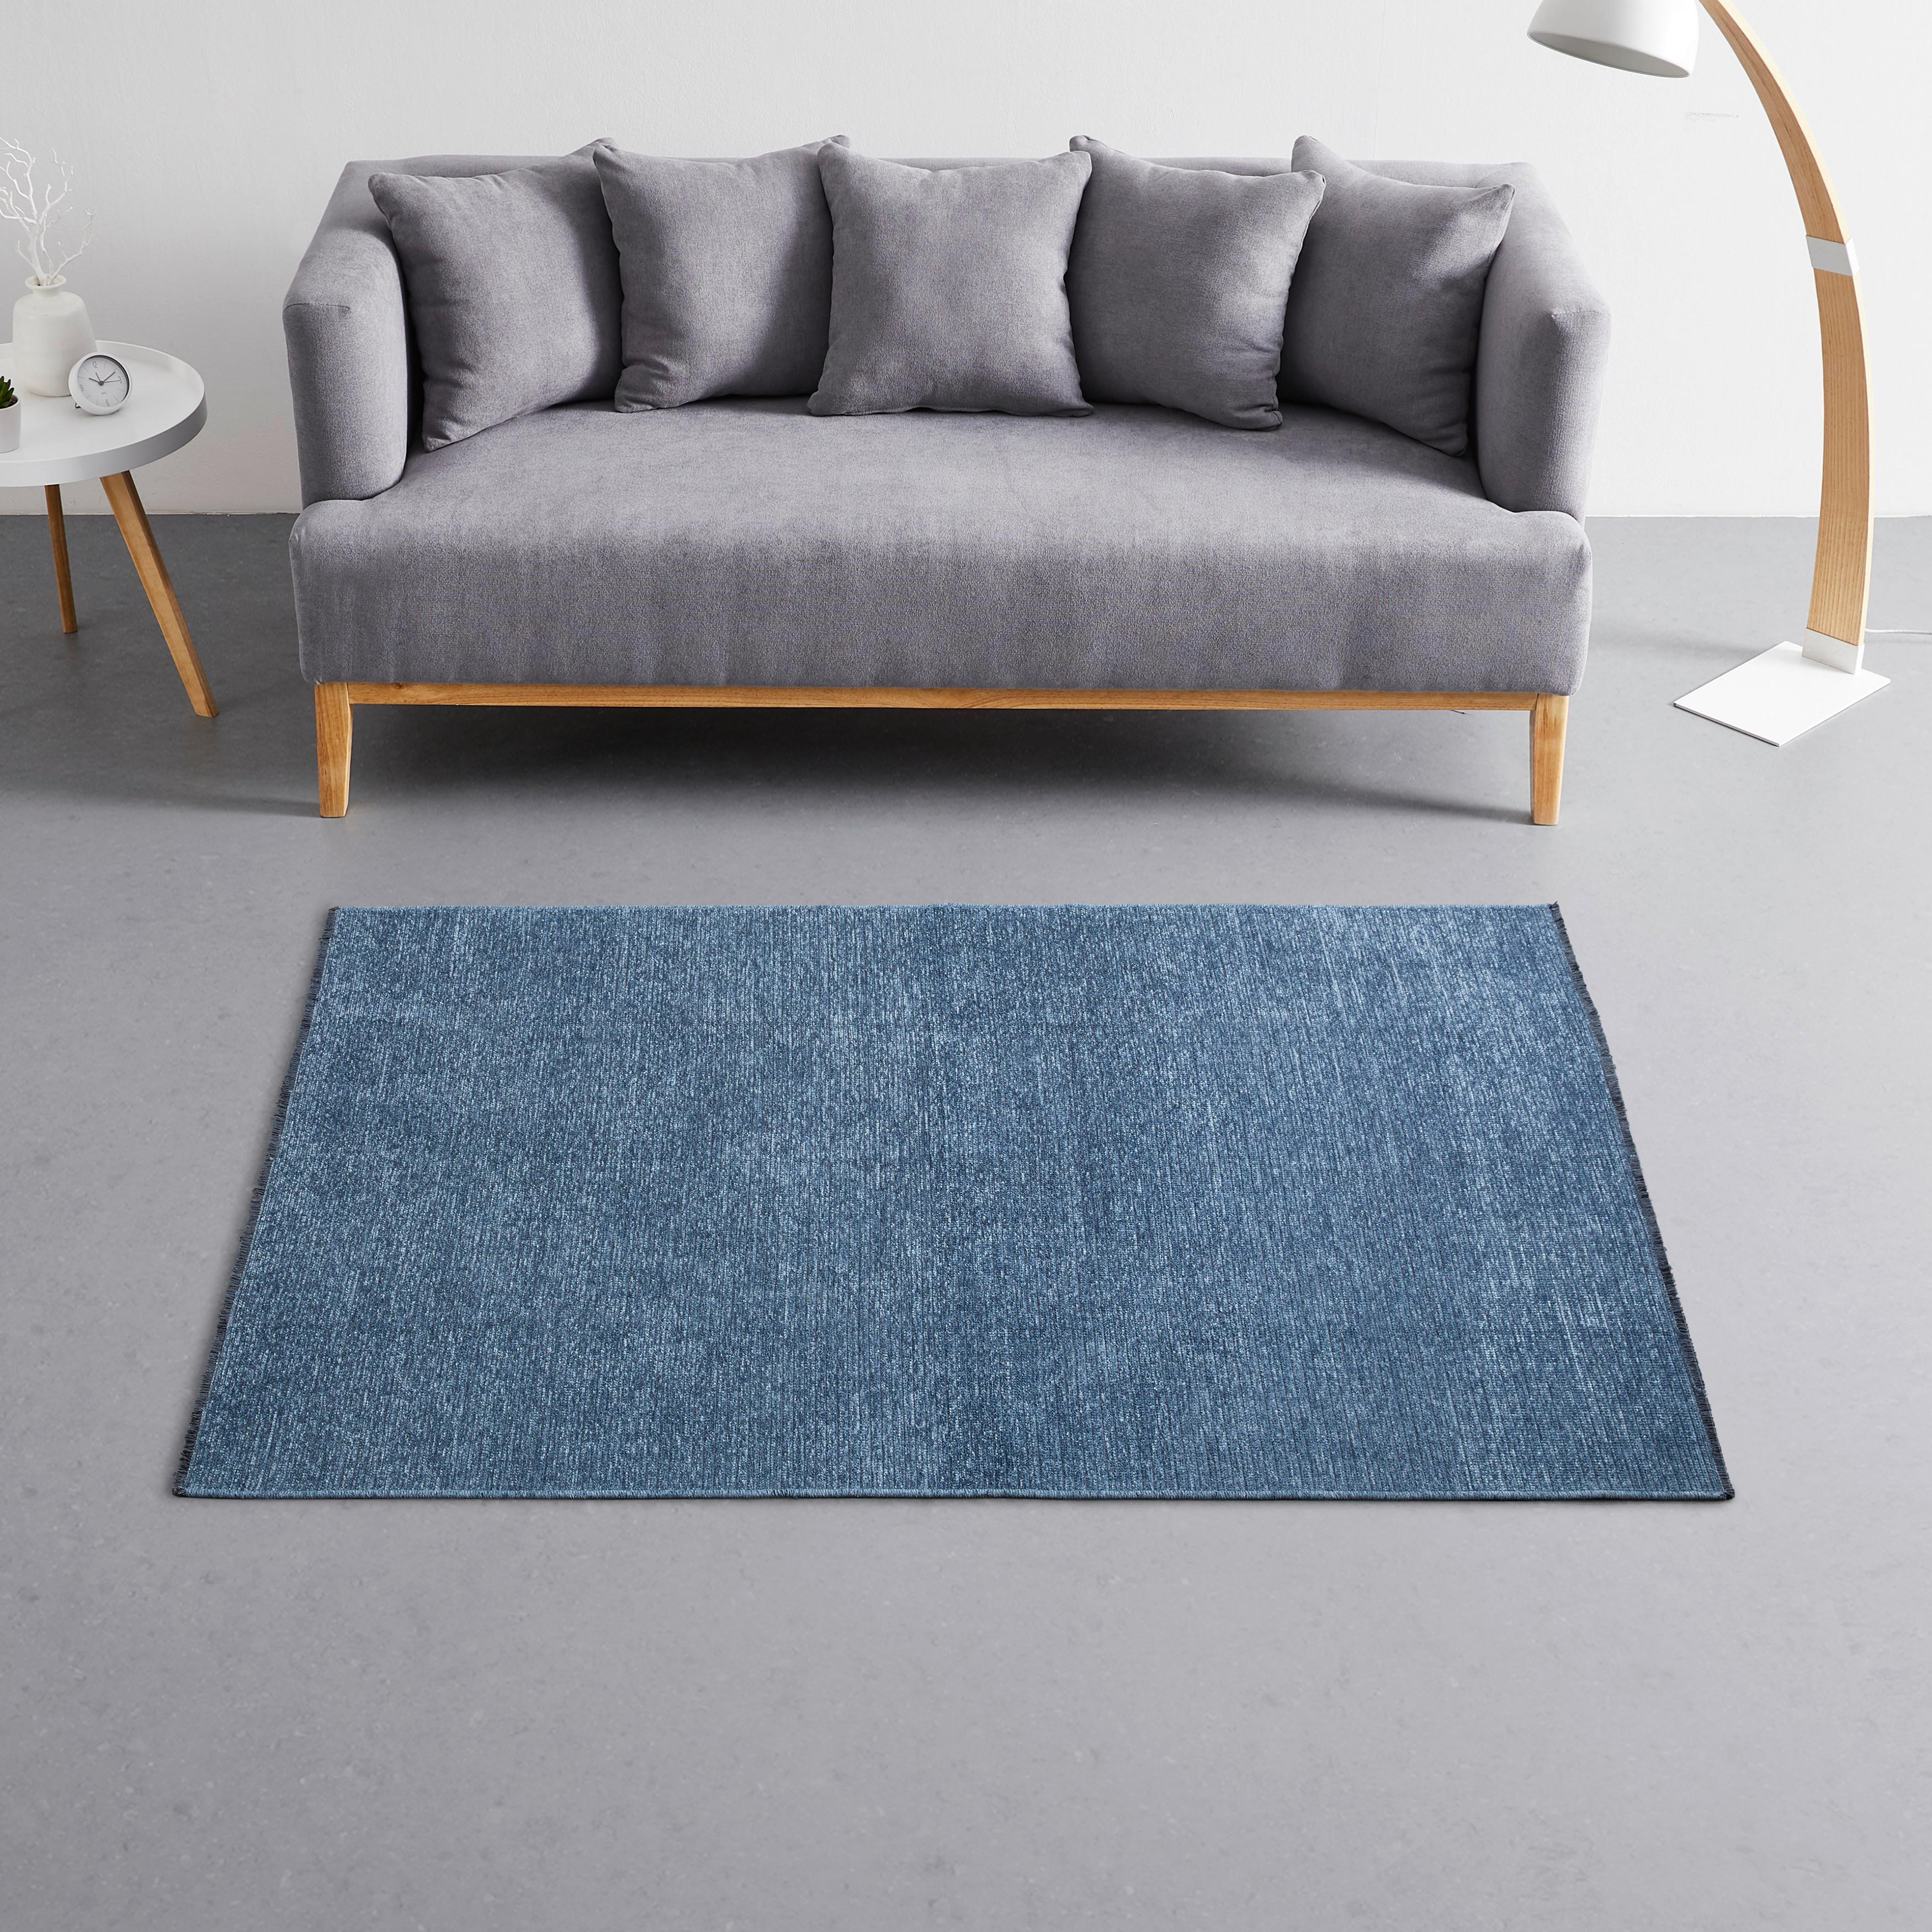 Szőtt Szőnyeg Silke 80/150 - Kék, romantikus/Landhaus, Textil (80/150cm) - Modern Living